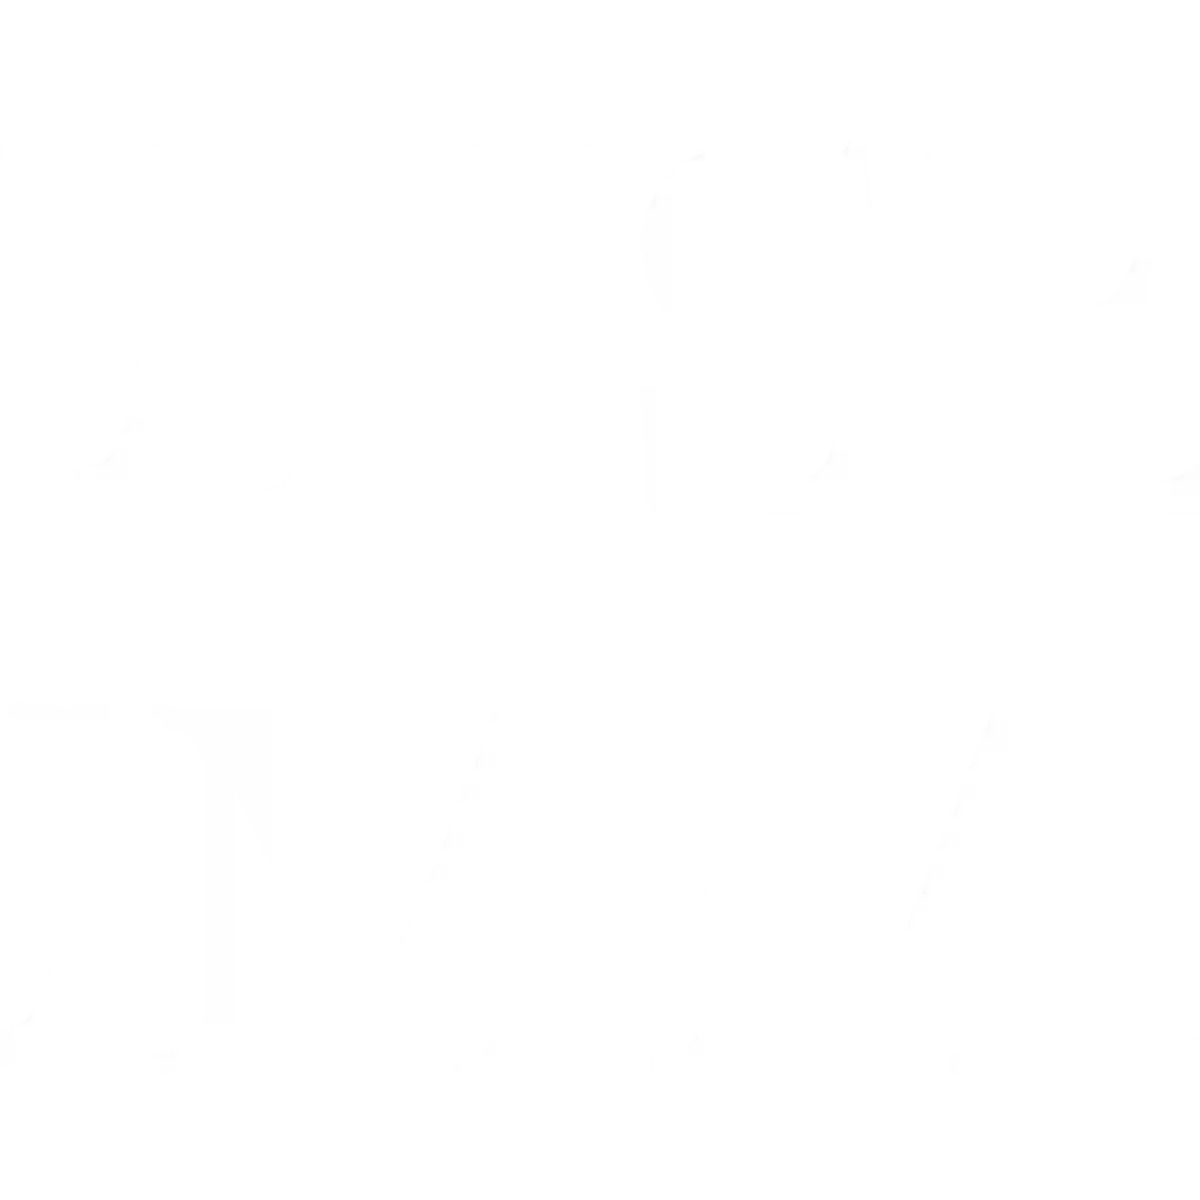 Sunset Summit Apartments